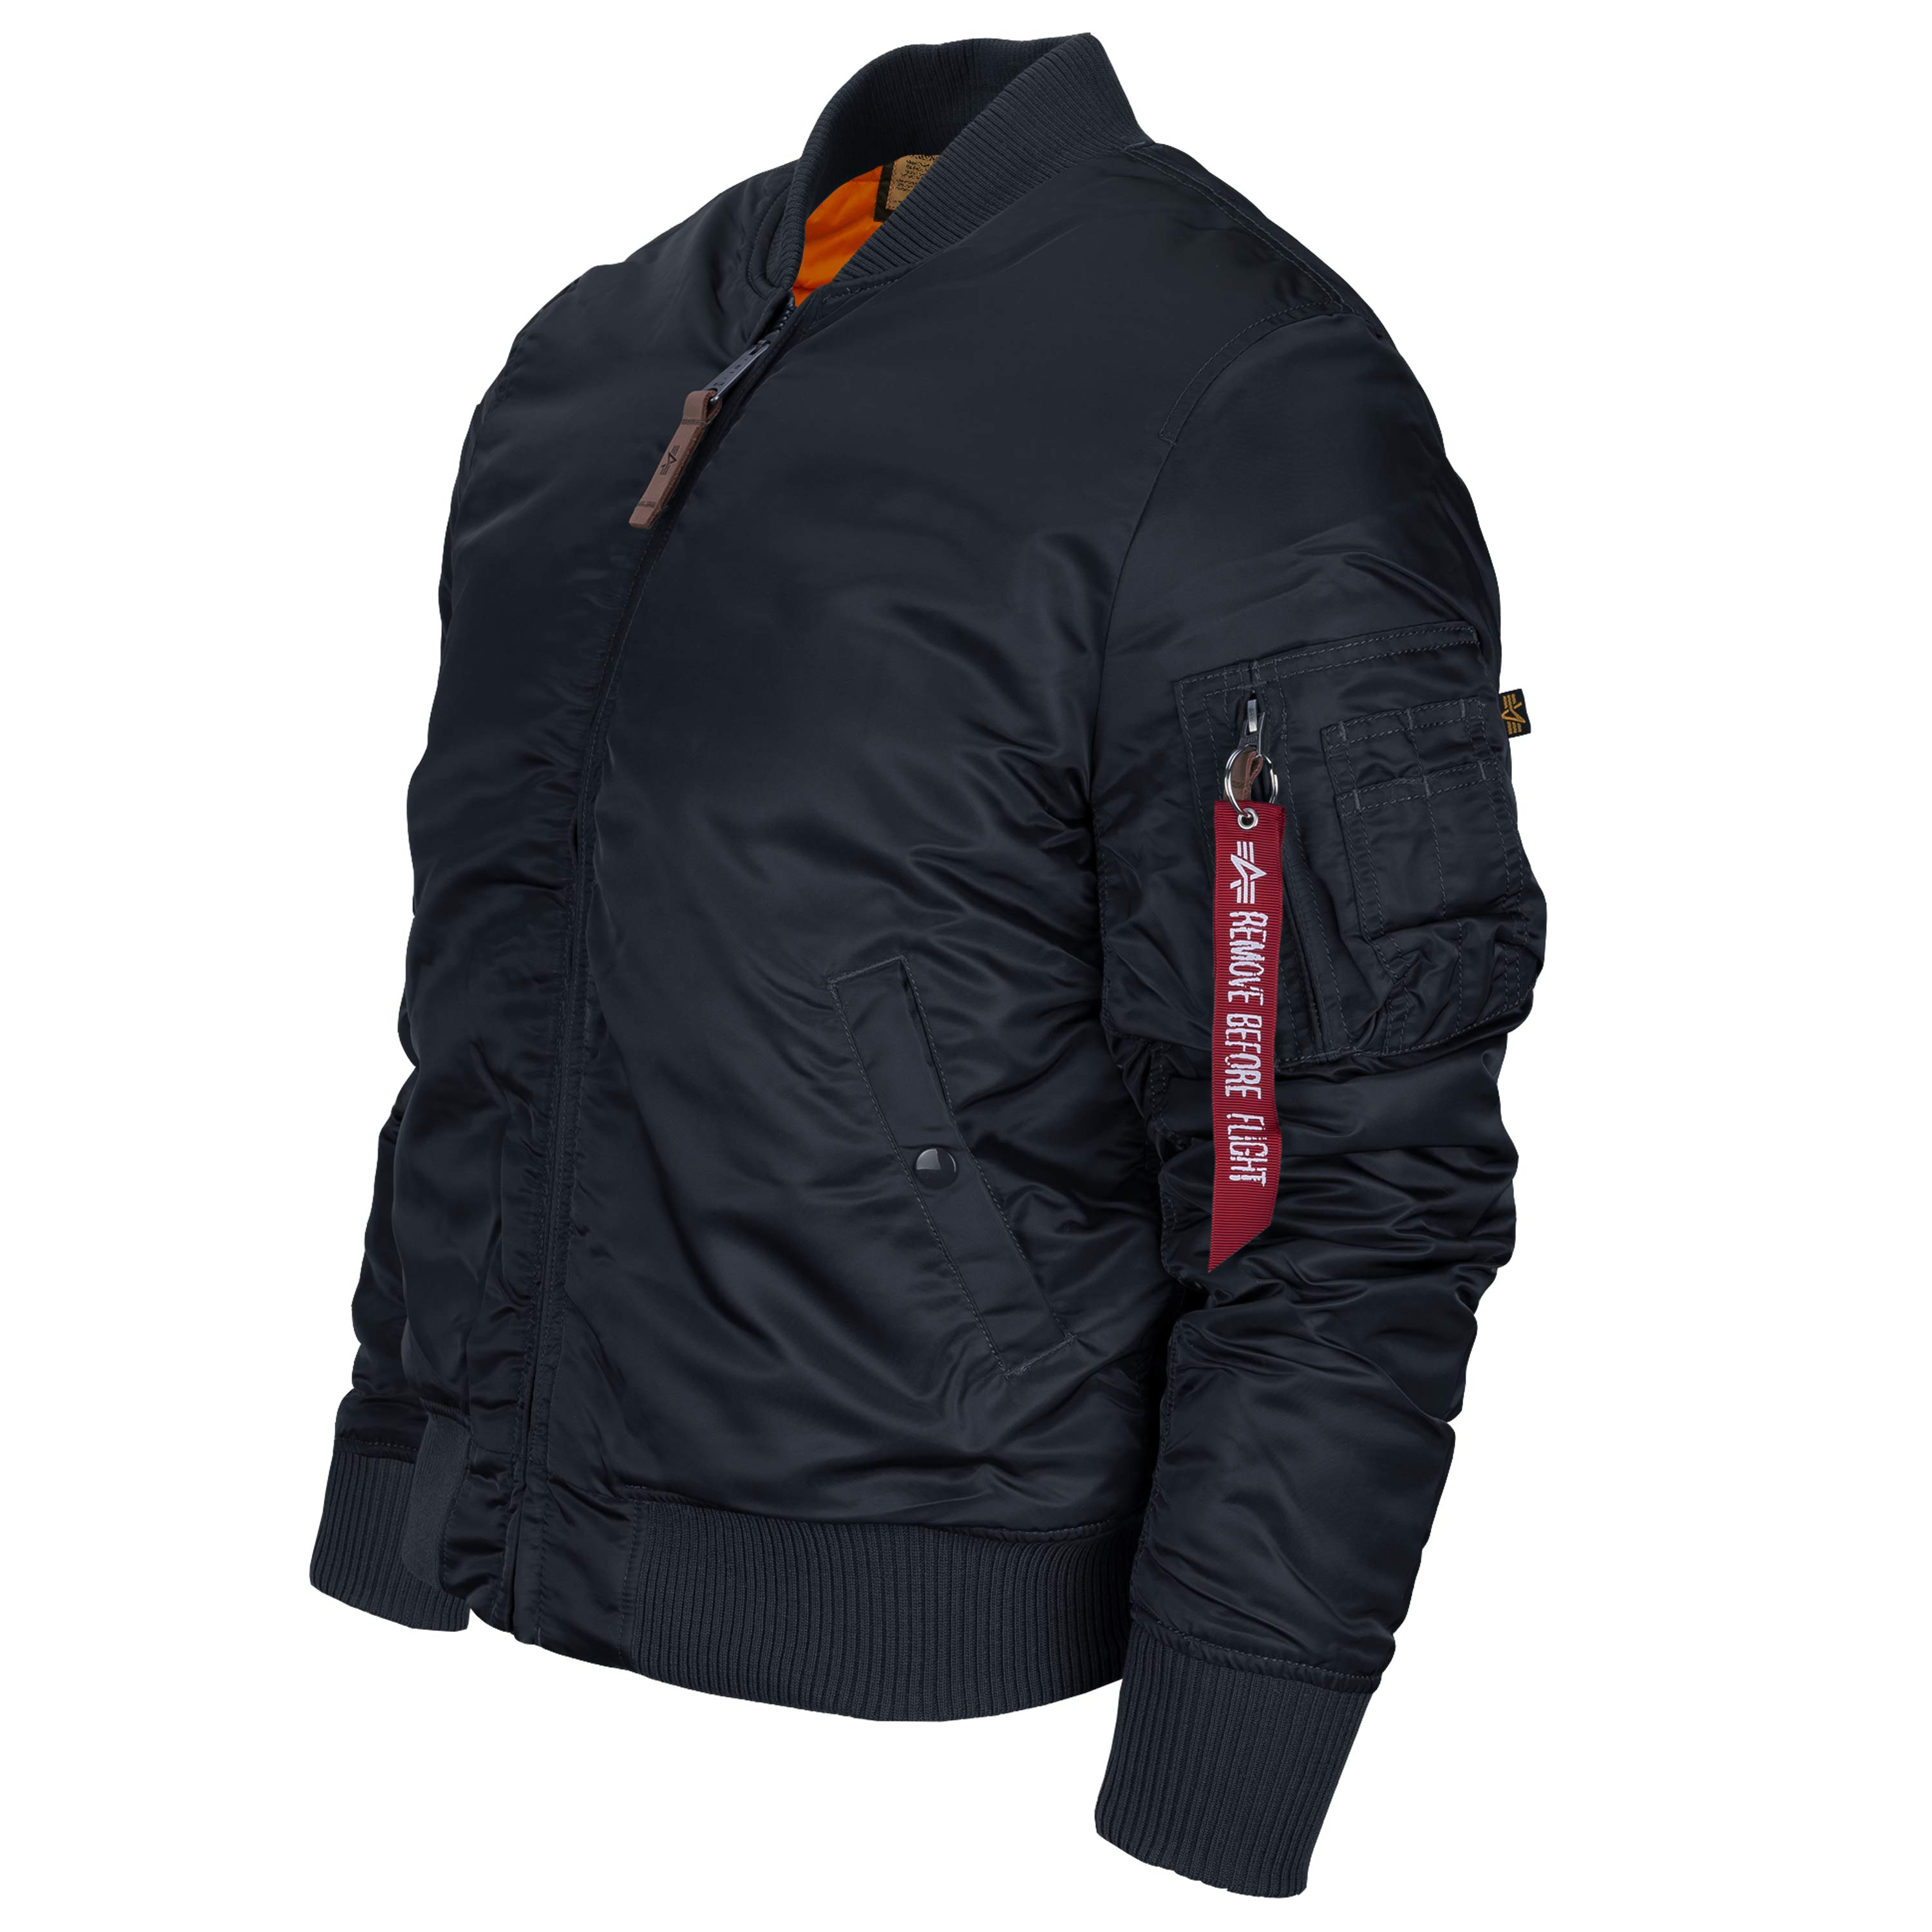 Comprar Industries chaqueta 59 en ASMC